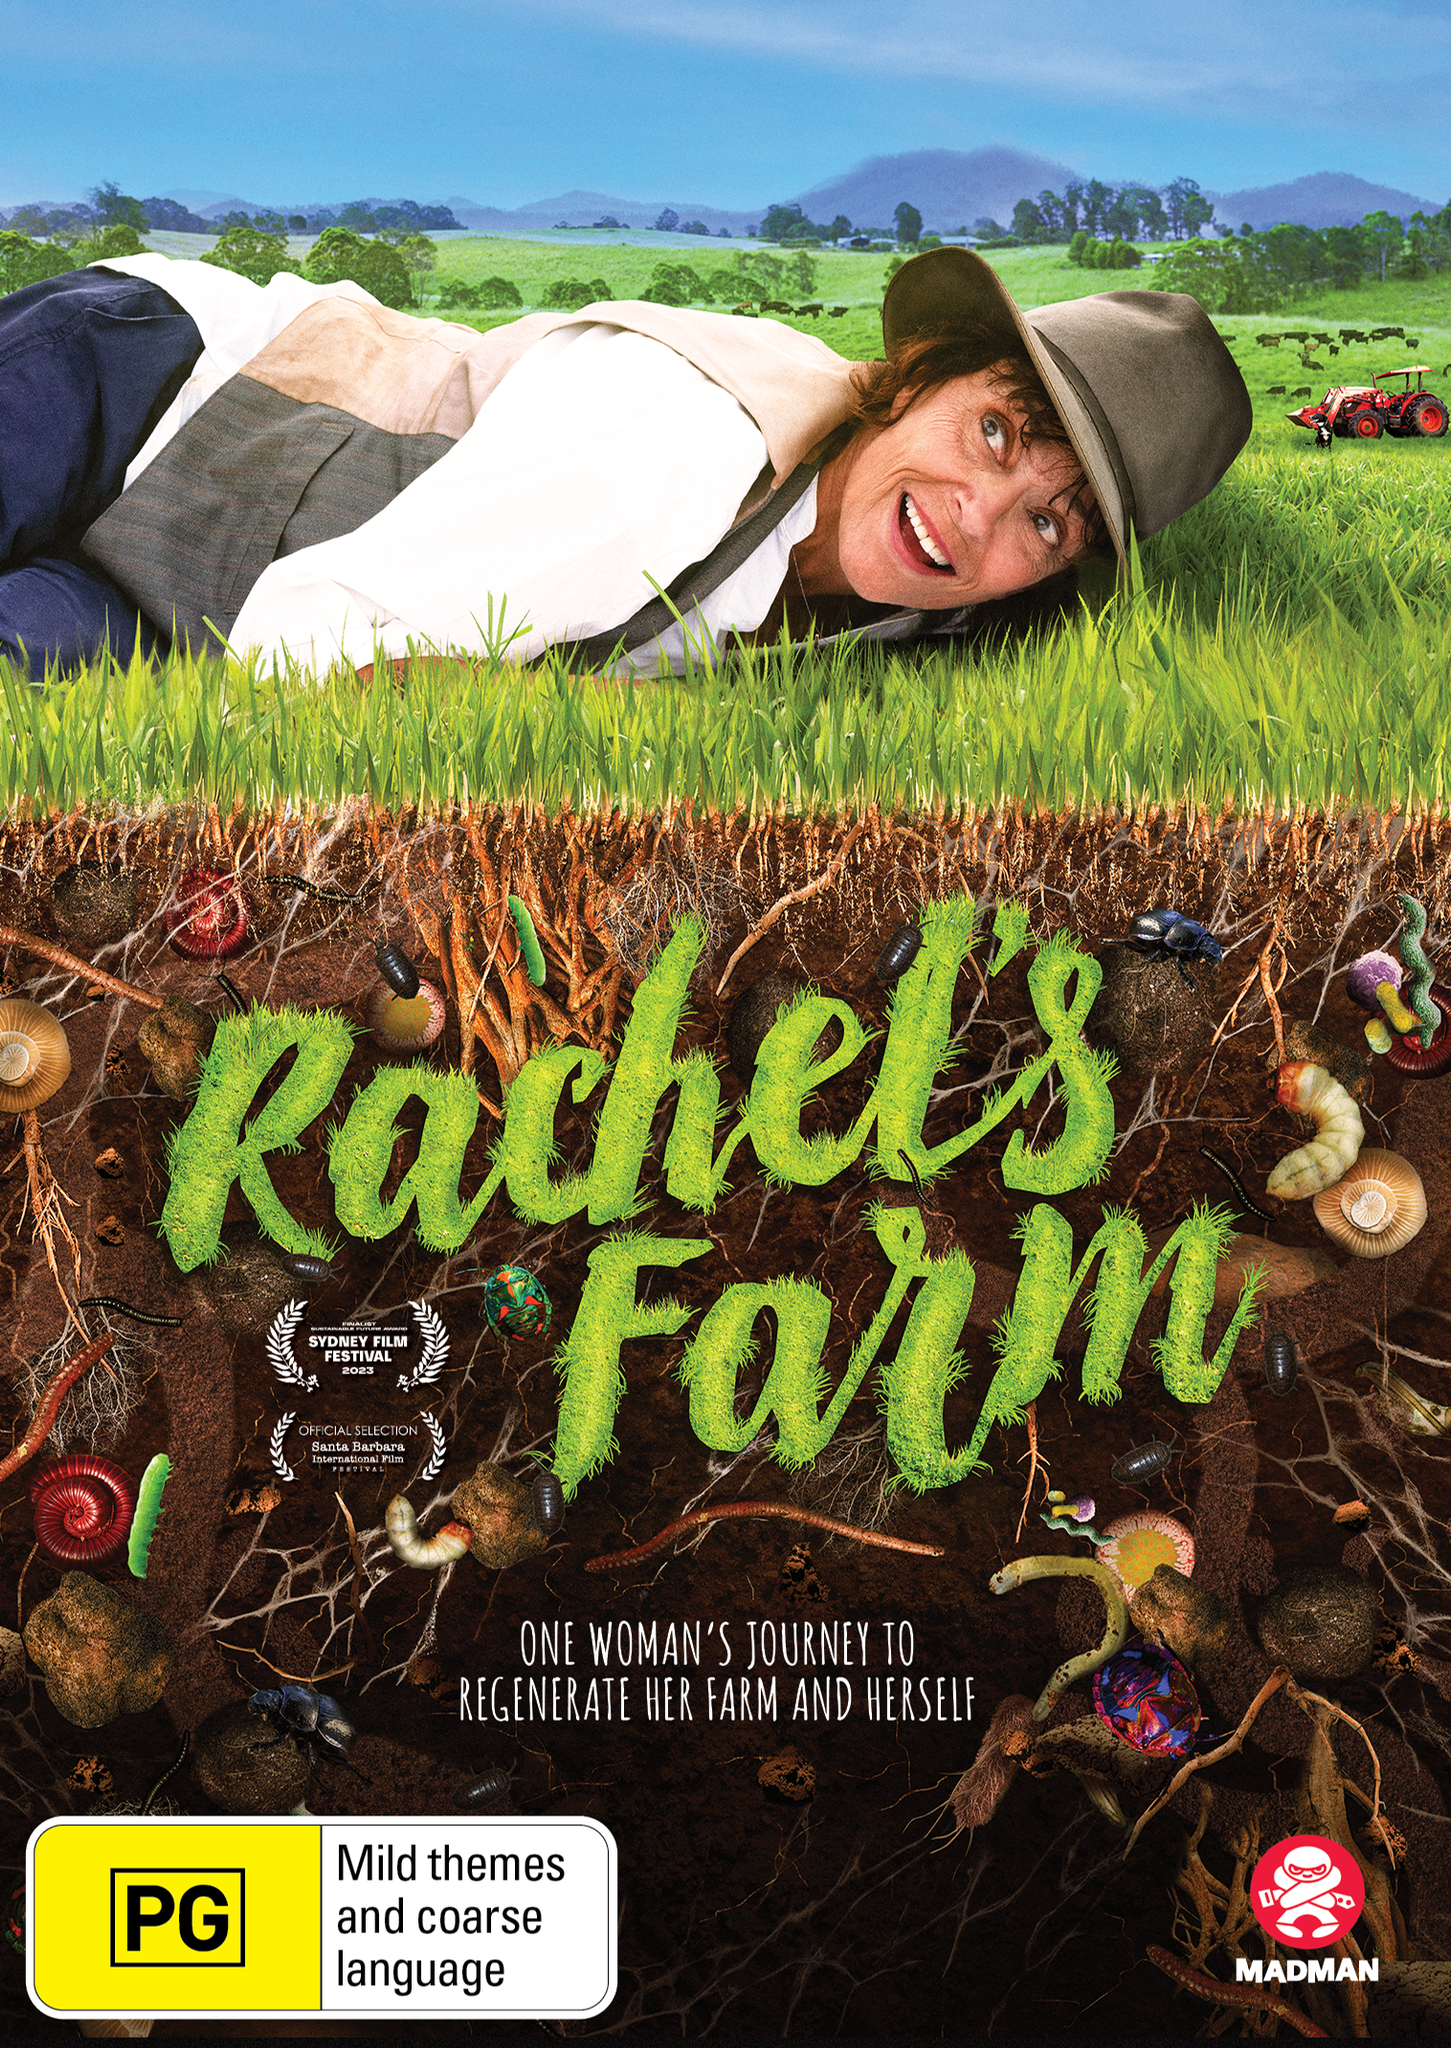 RACHEL'S FARM